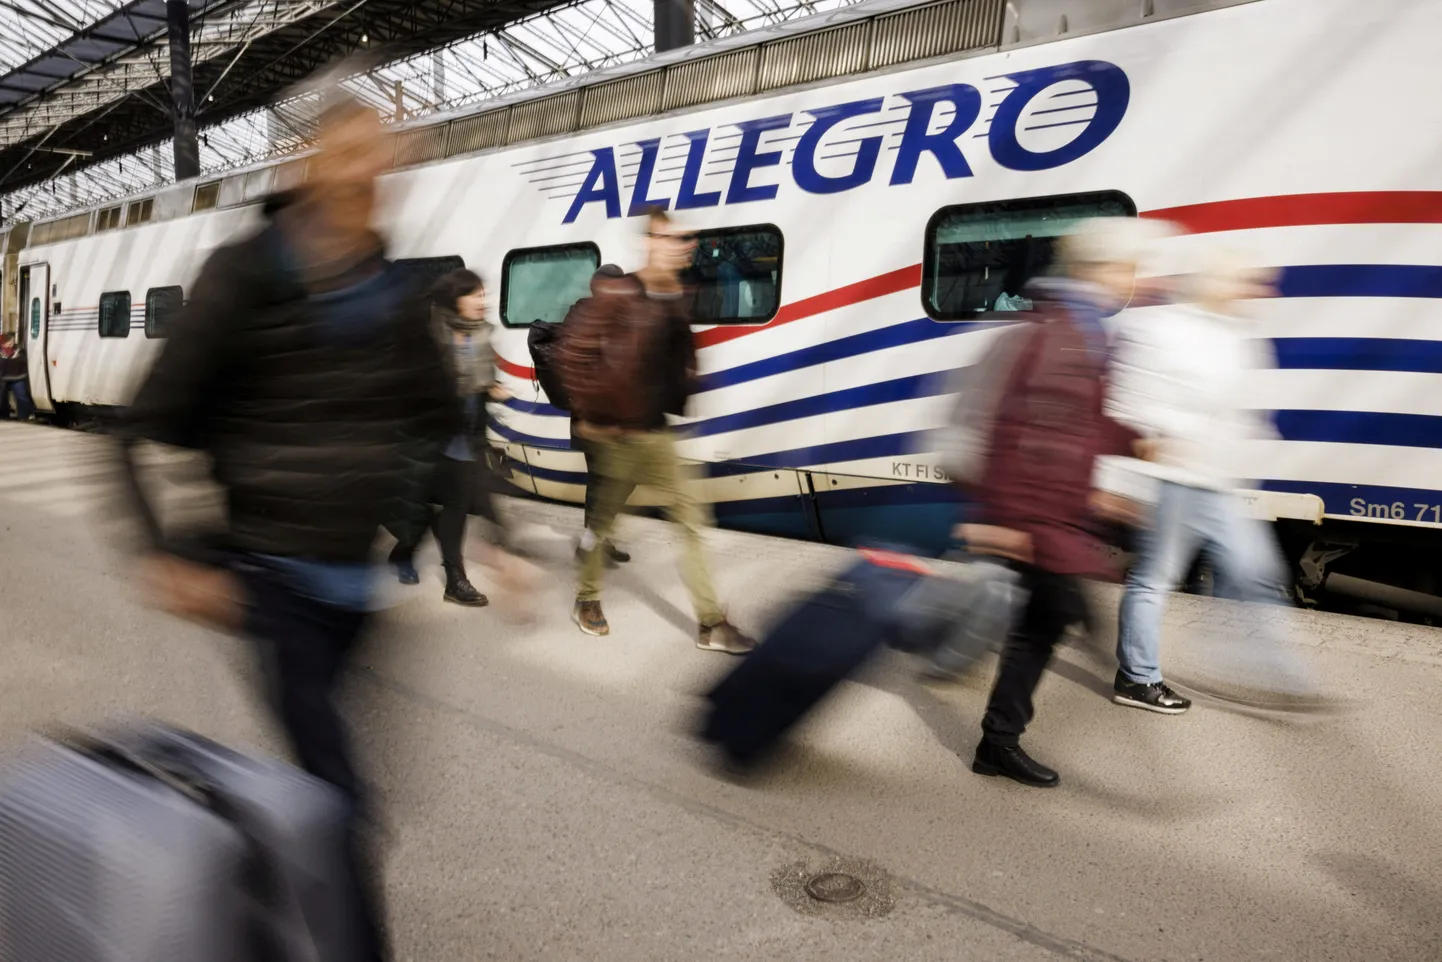 Скоростной поезд Allegro, годами курсировавший по маршруту Хельсинки-Петербург, прекратил свою работу весной 2022 года после начала полномасштабного вторжения российской армии в Украину.